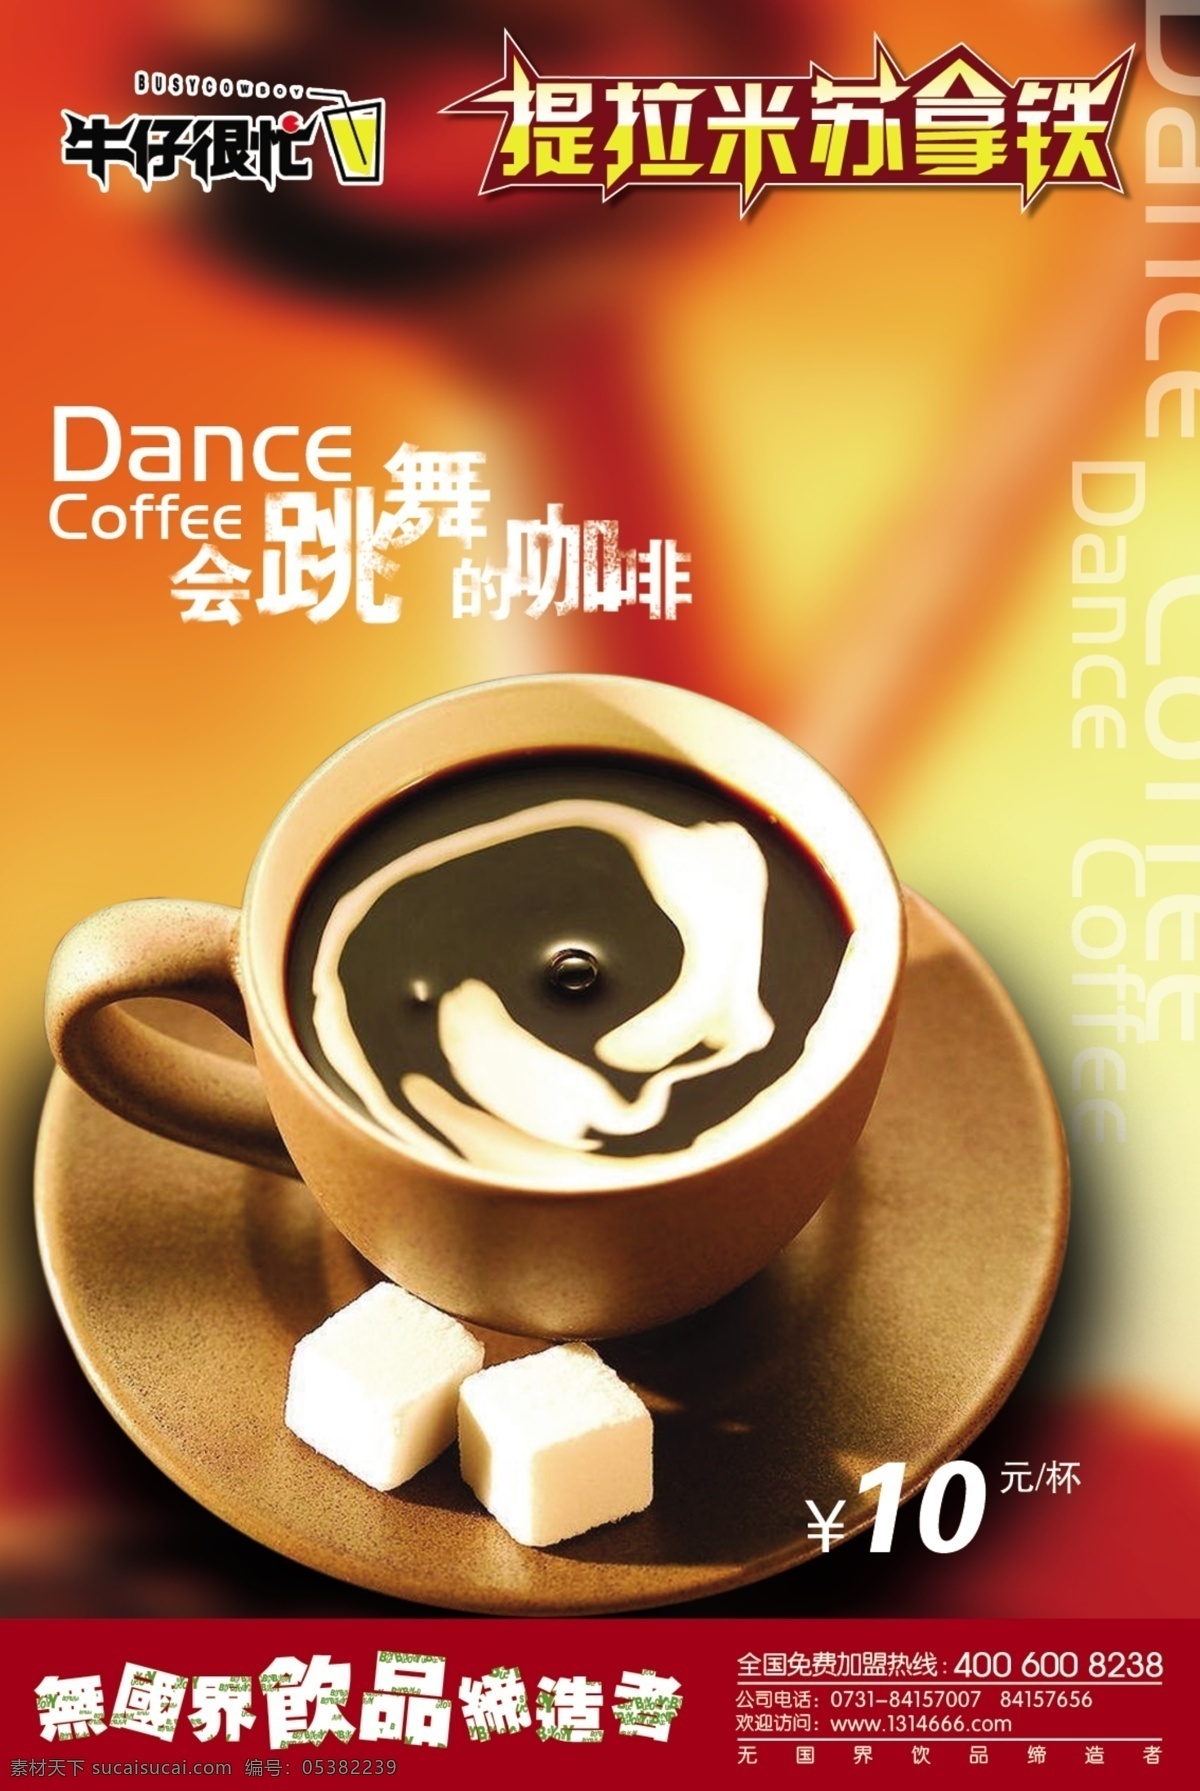 广告设计模板 咖啡 咖啡海报 源文件 米苏 铁 分层 海报 模板下载 米苏拿铁咖啡 米苏拿铁 奶茶 果汁 系列 矢量图 日常生活